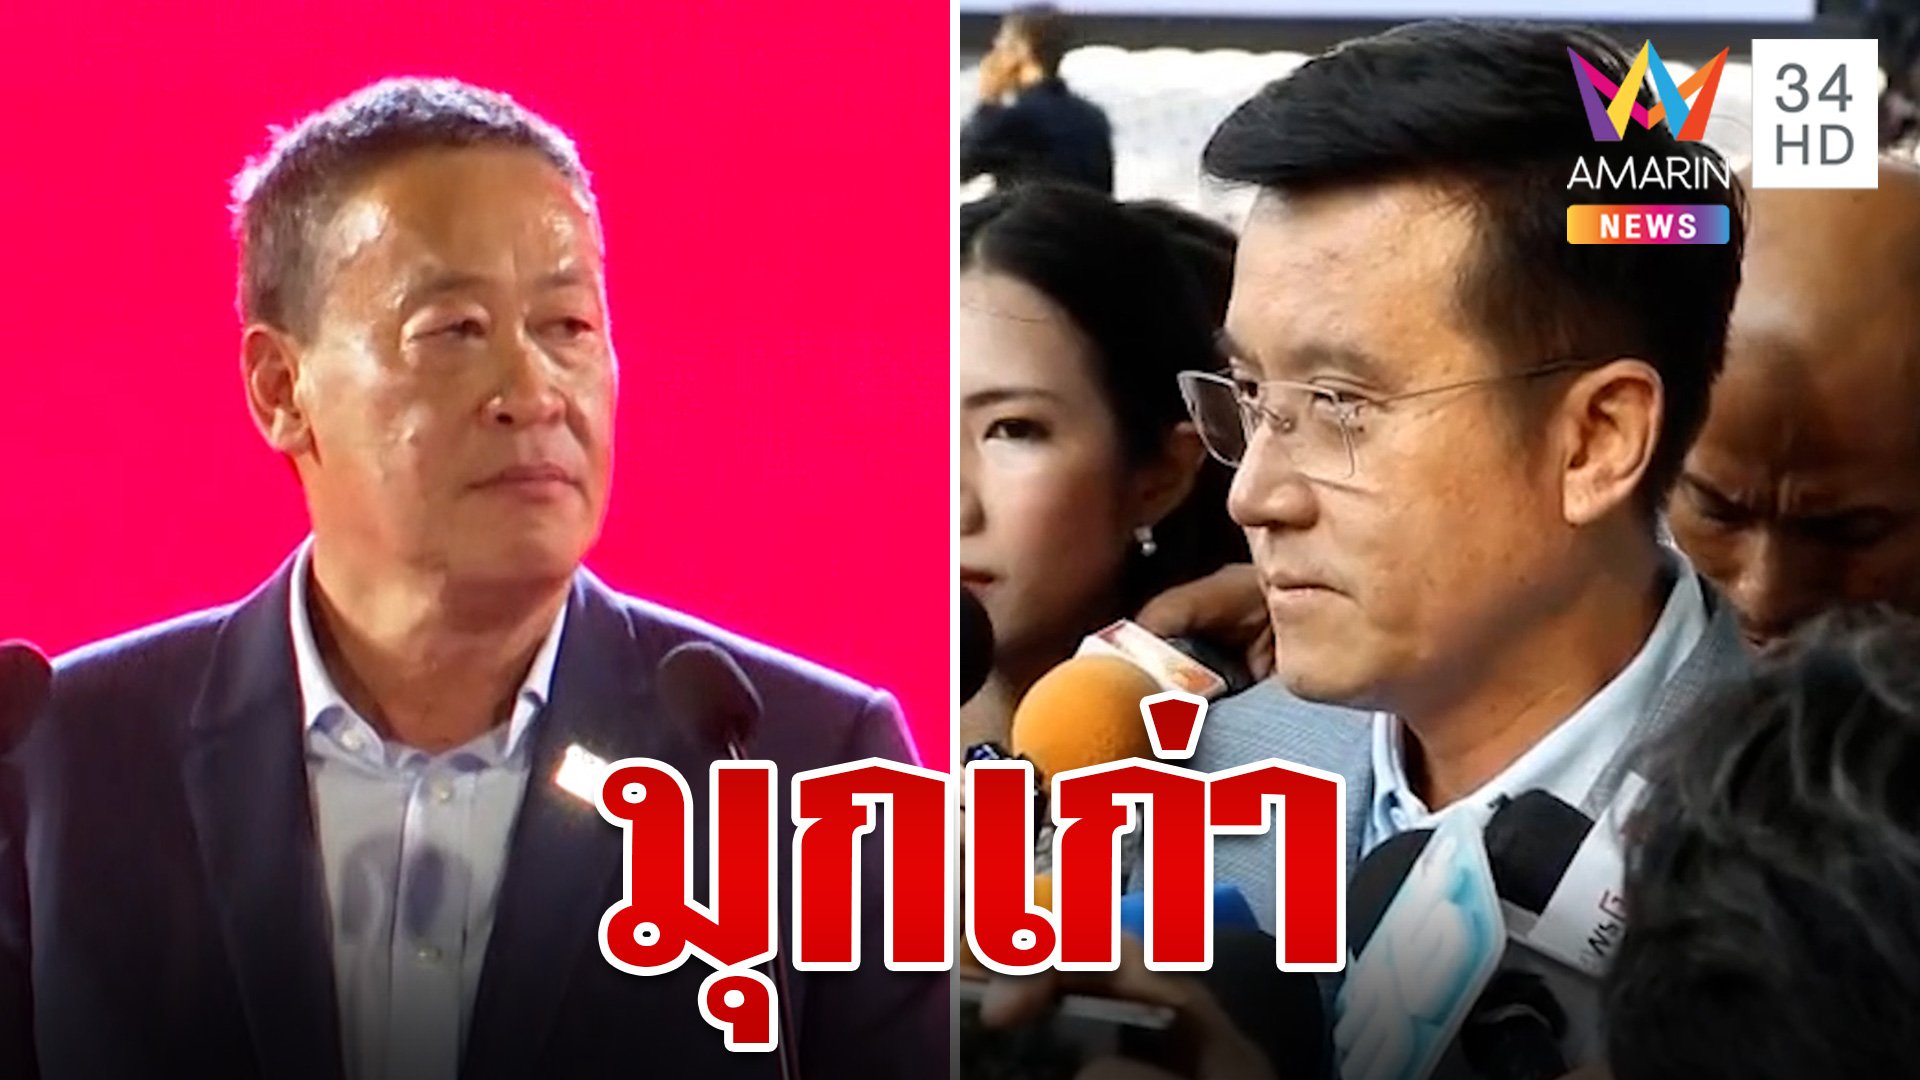 “ชัยวุฒิ” บอก “เพื่อไทย” แจก 10,000 เป็นมุกเก่า | ทุบโต๊ะข่าว | 6 เม.ย. 66 | AMARIN TVHD34